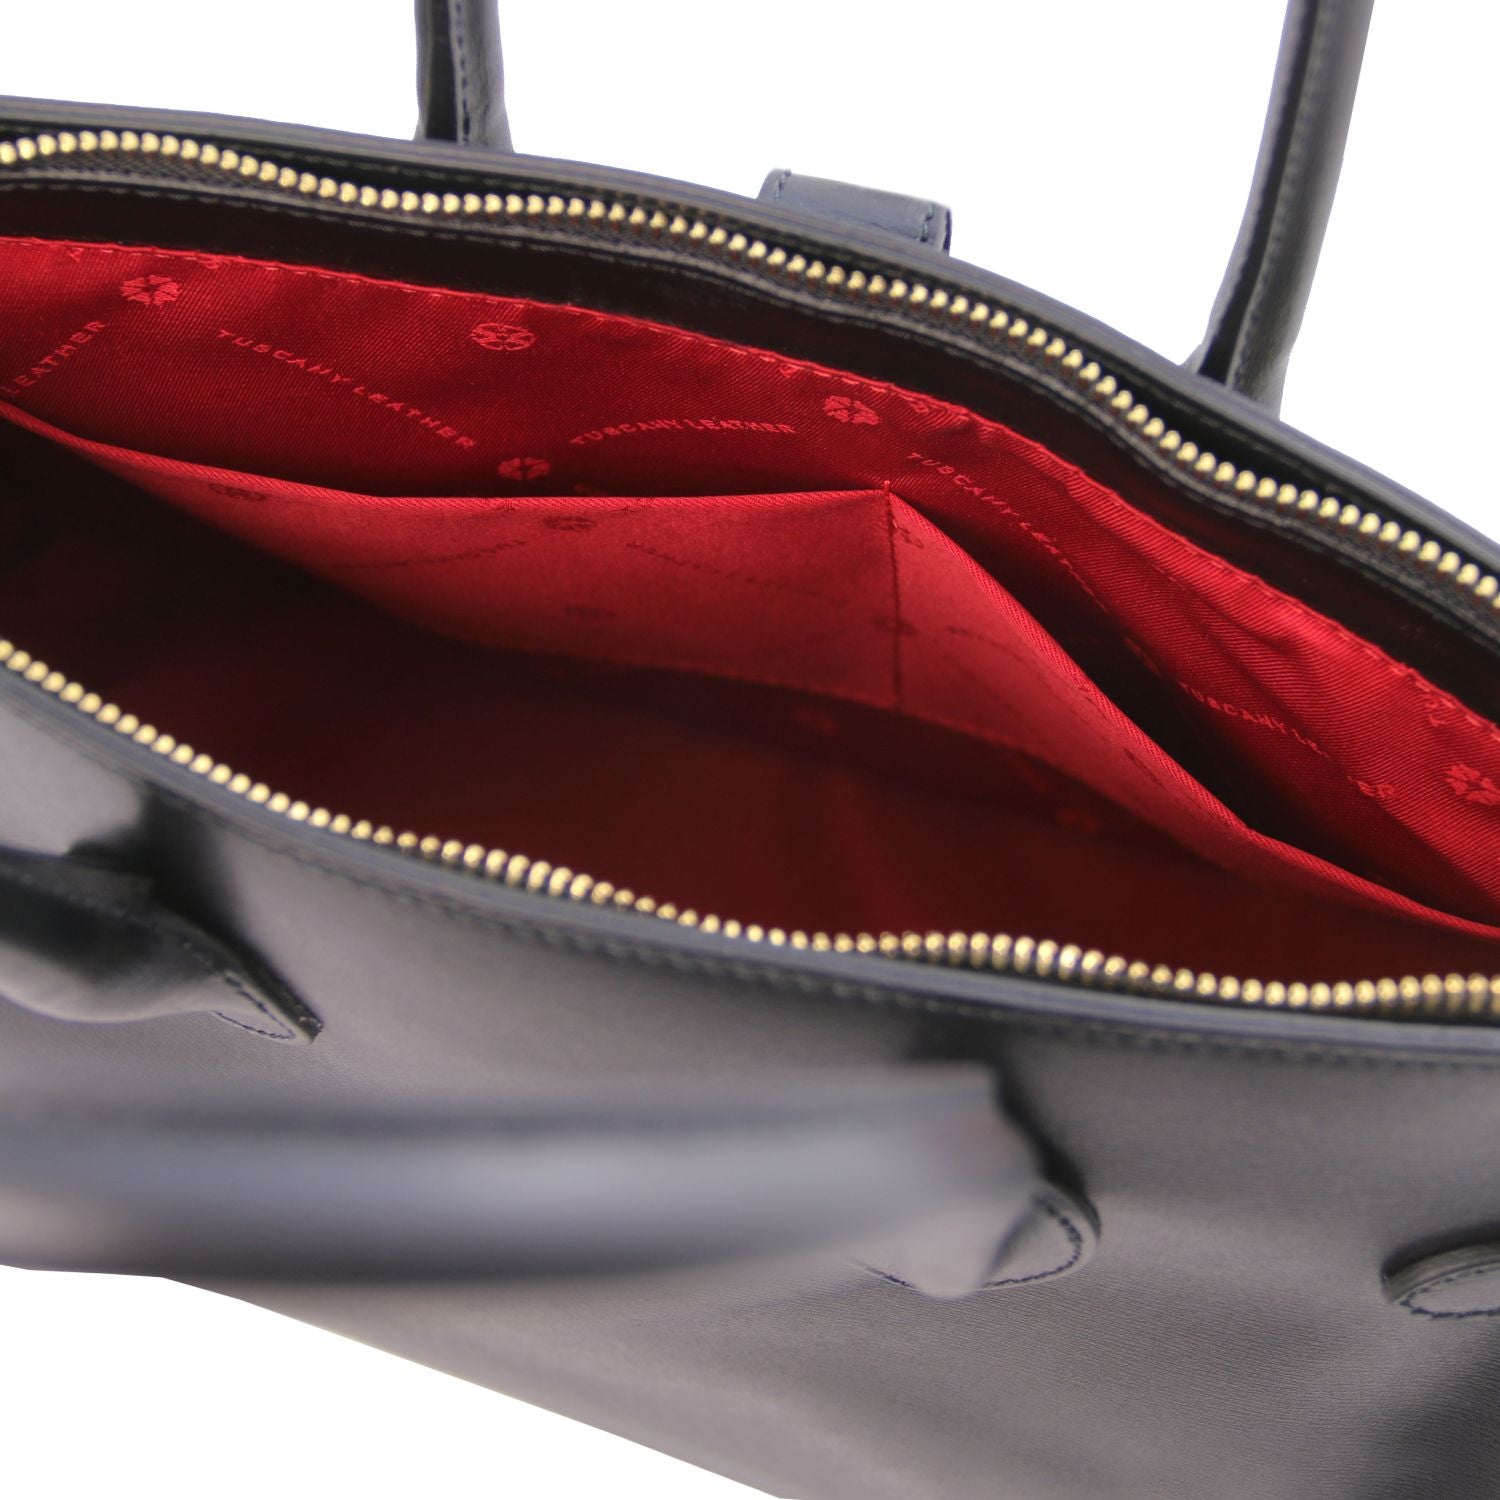 TL Populär Handväska Av Äkta Italienskt läder - NewBag4you